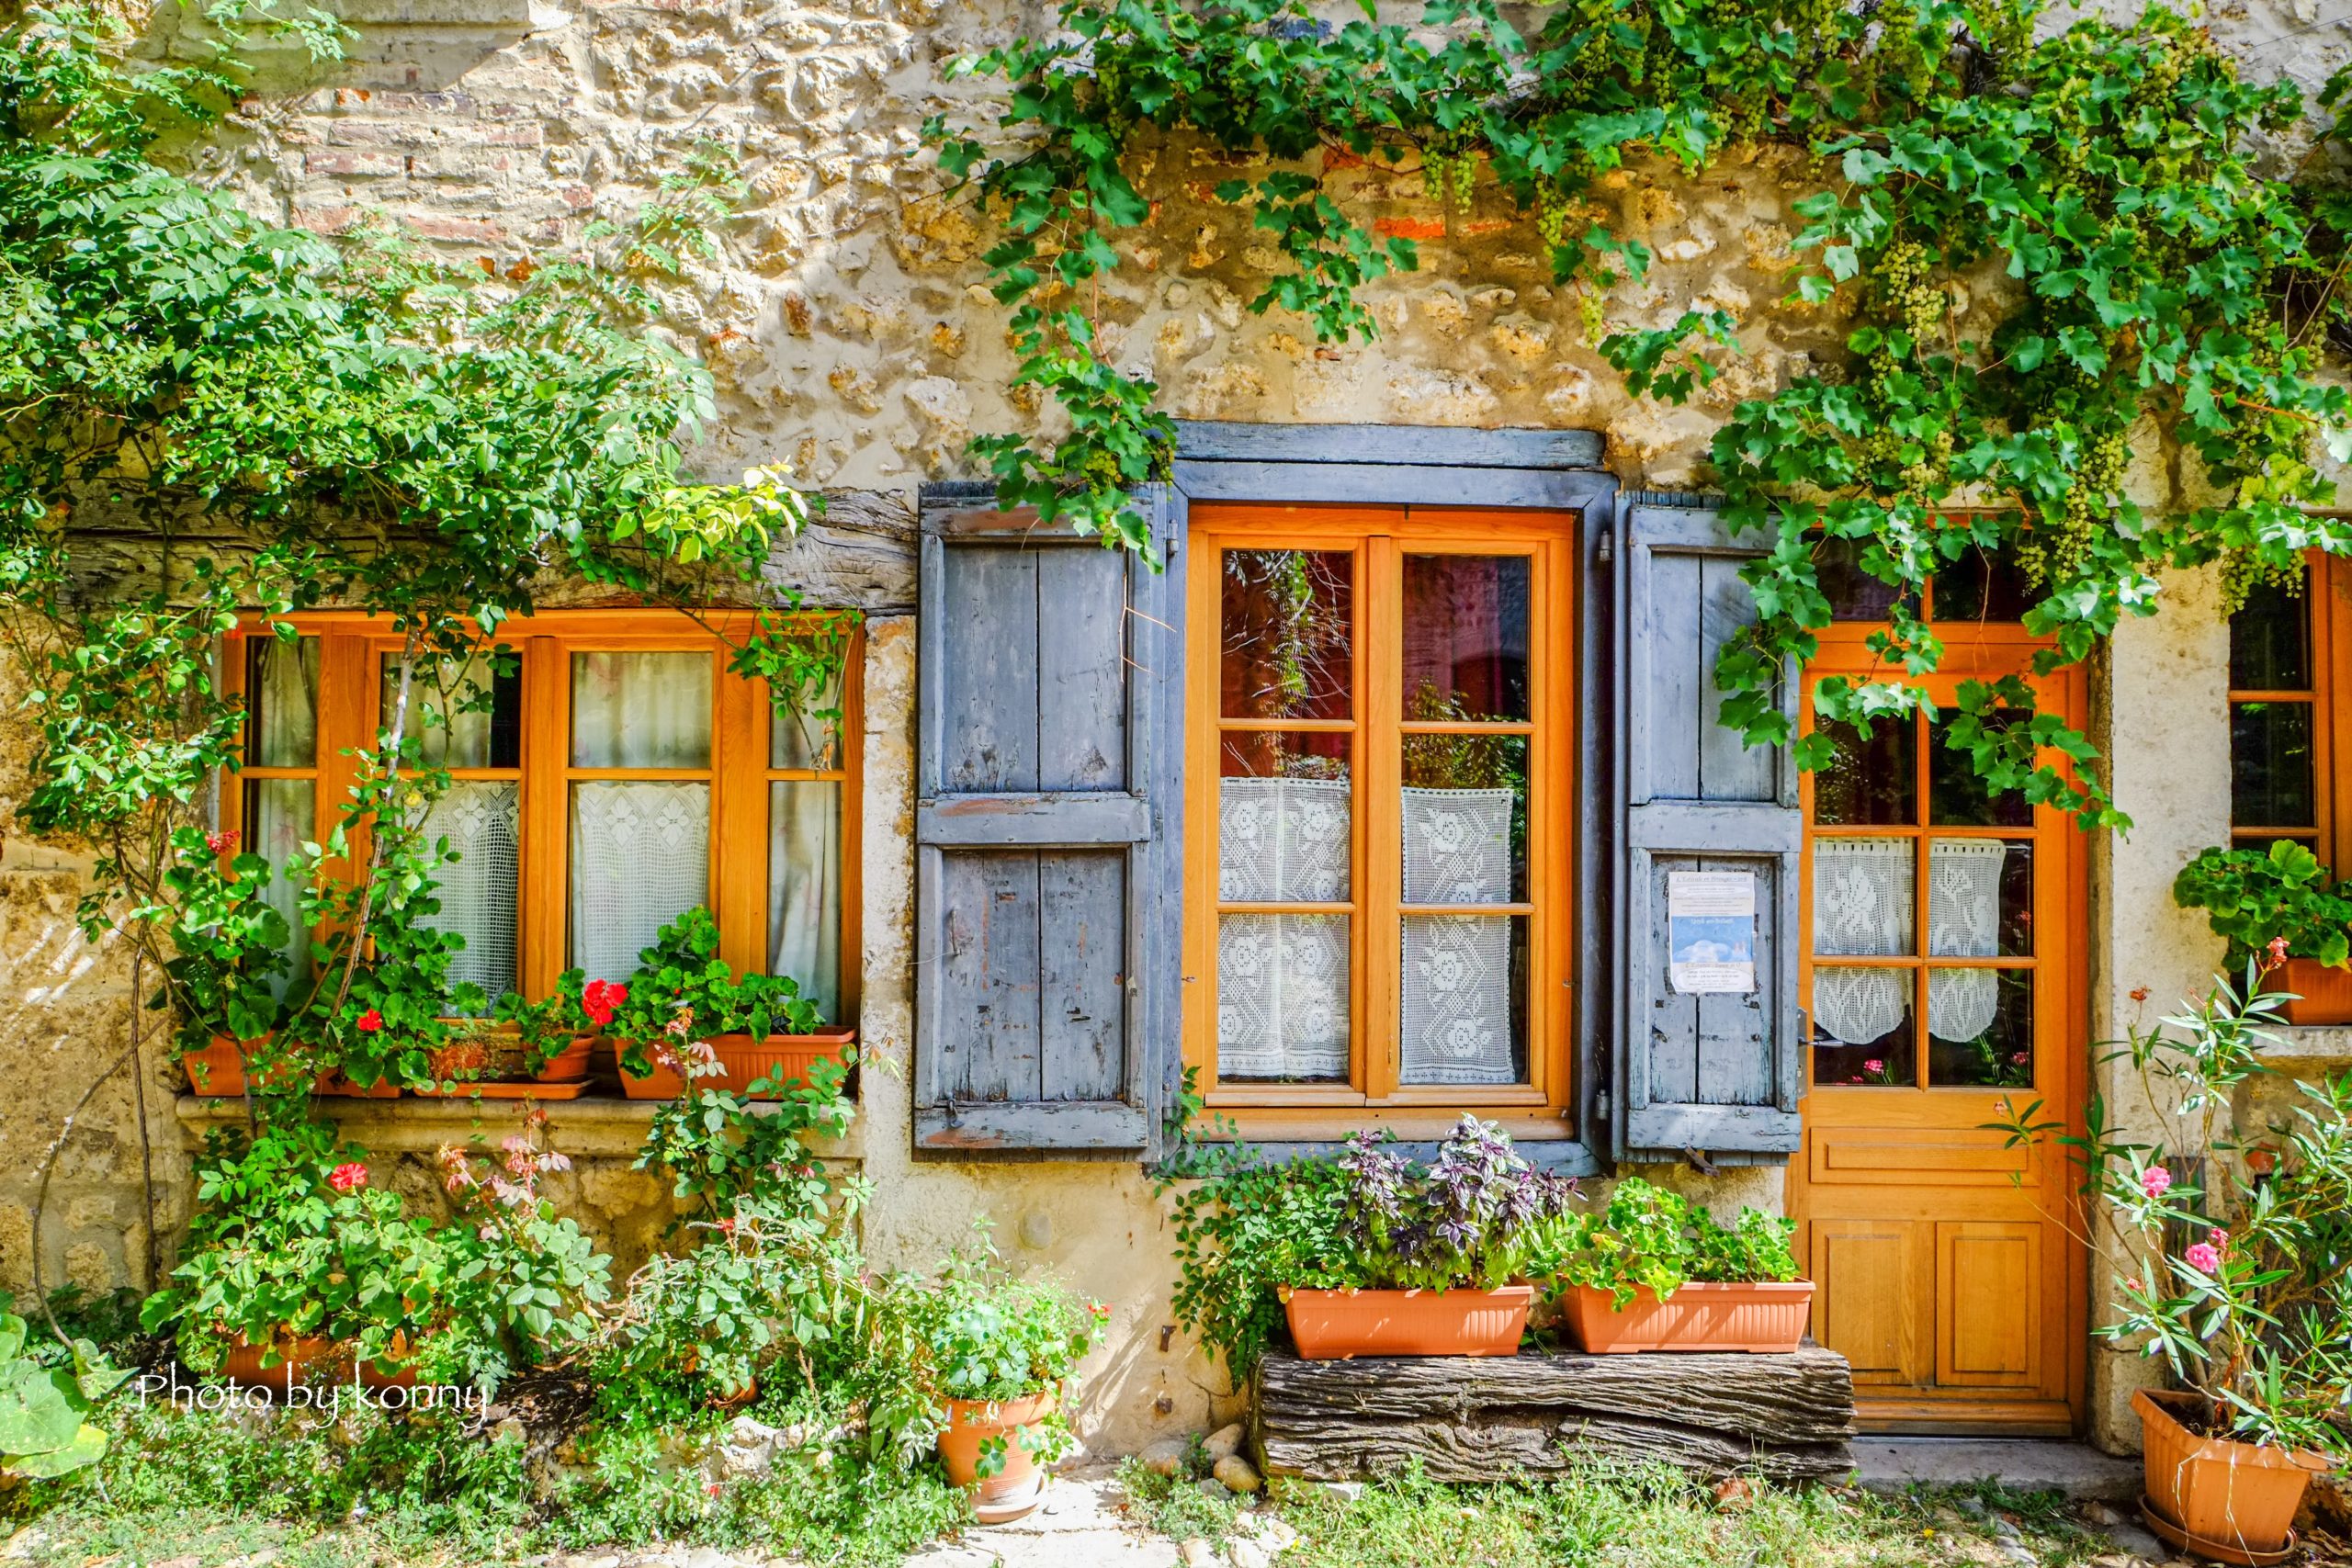 フランス 最も美しい村 ペルージュ